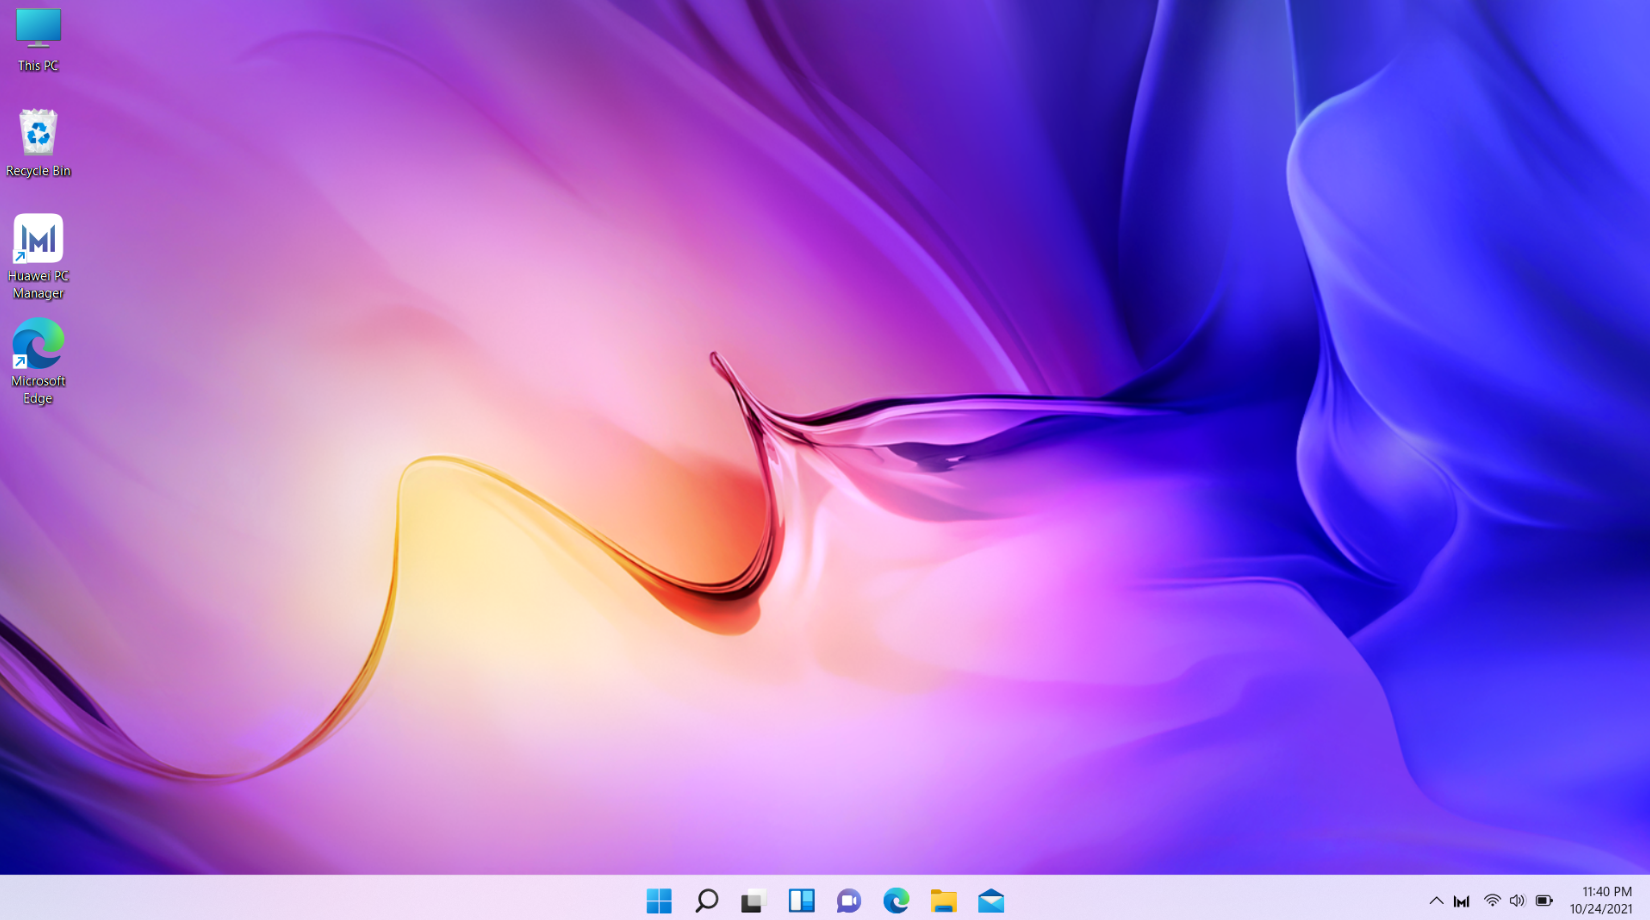 Muốn thay đổi không gian làm việc trên máy tính của bạn trở nên thú vị và đẹp mắt hơn? Với Windows 11, bạn có thể dễ dàng đổi hình nền máy tính chỉ với vài thao tác. Khám phá bộ ảnh nền đẹp mắt này và tận hưởng khoảng khắc làm việc thoải mái trên máy tính.